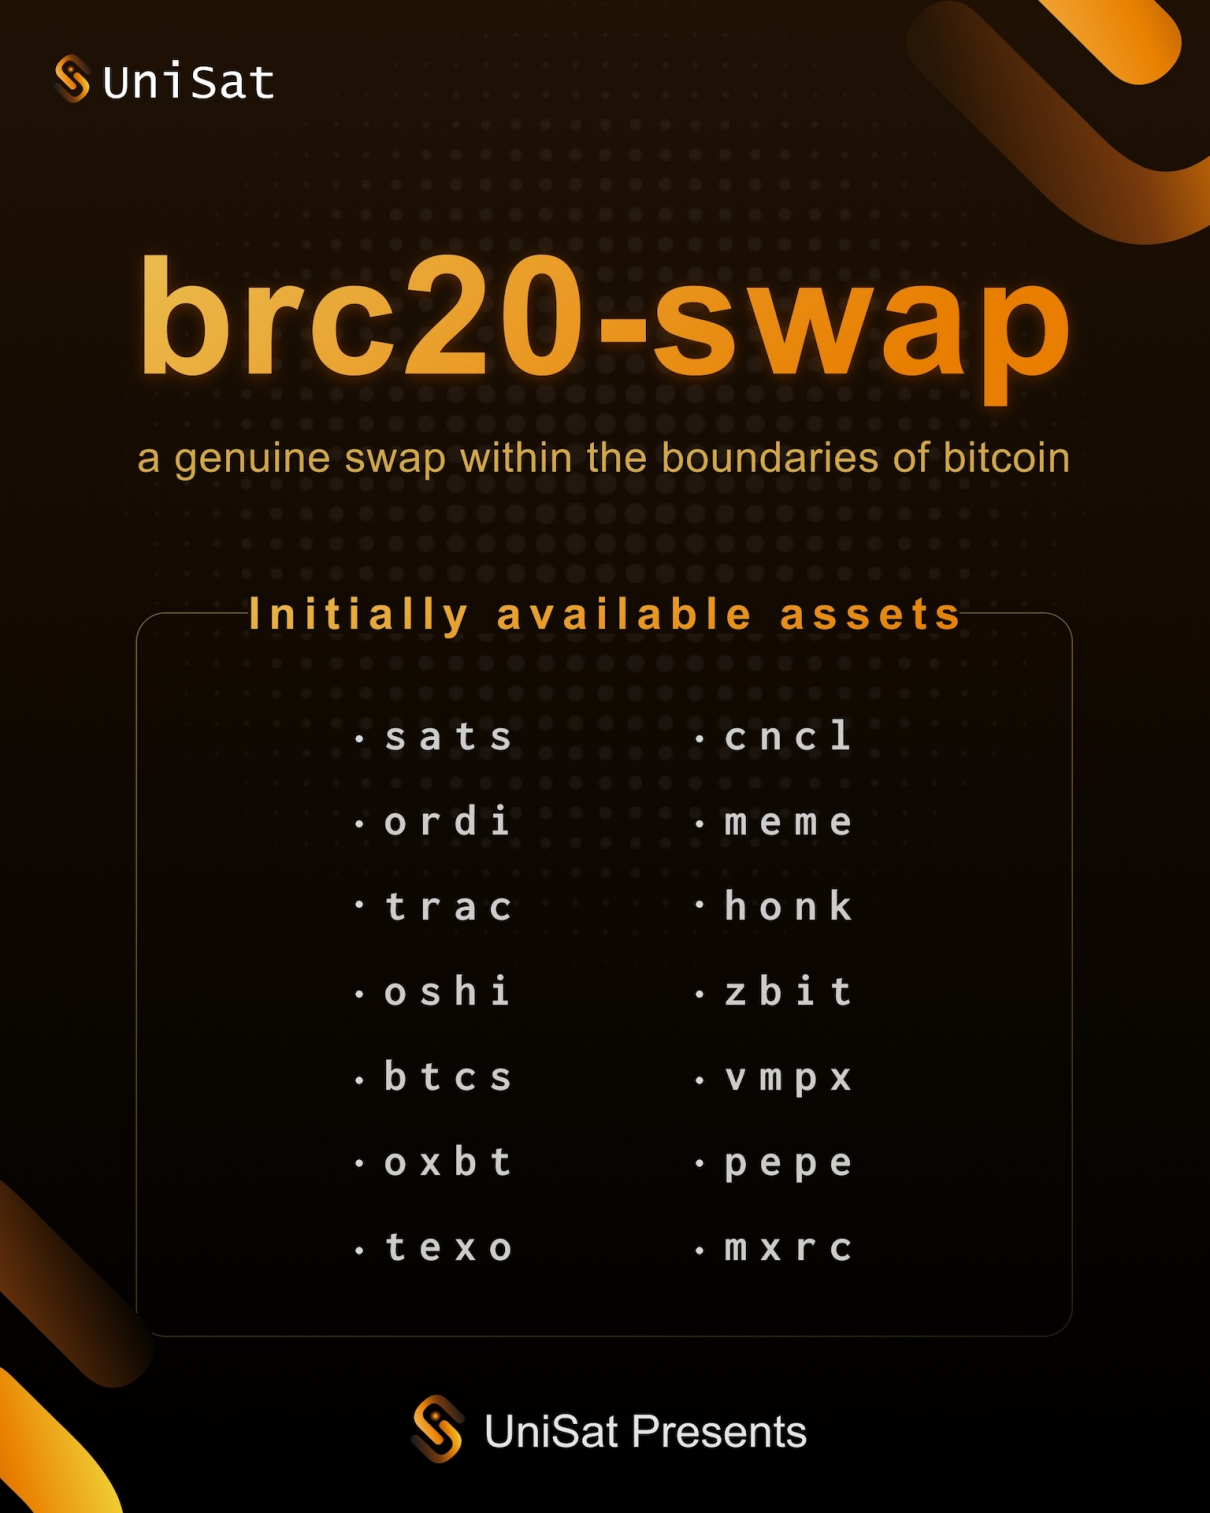 Unisat công bố 14 token brc 20 ban đầu được hỗ trợ bởi brc20-swap